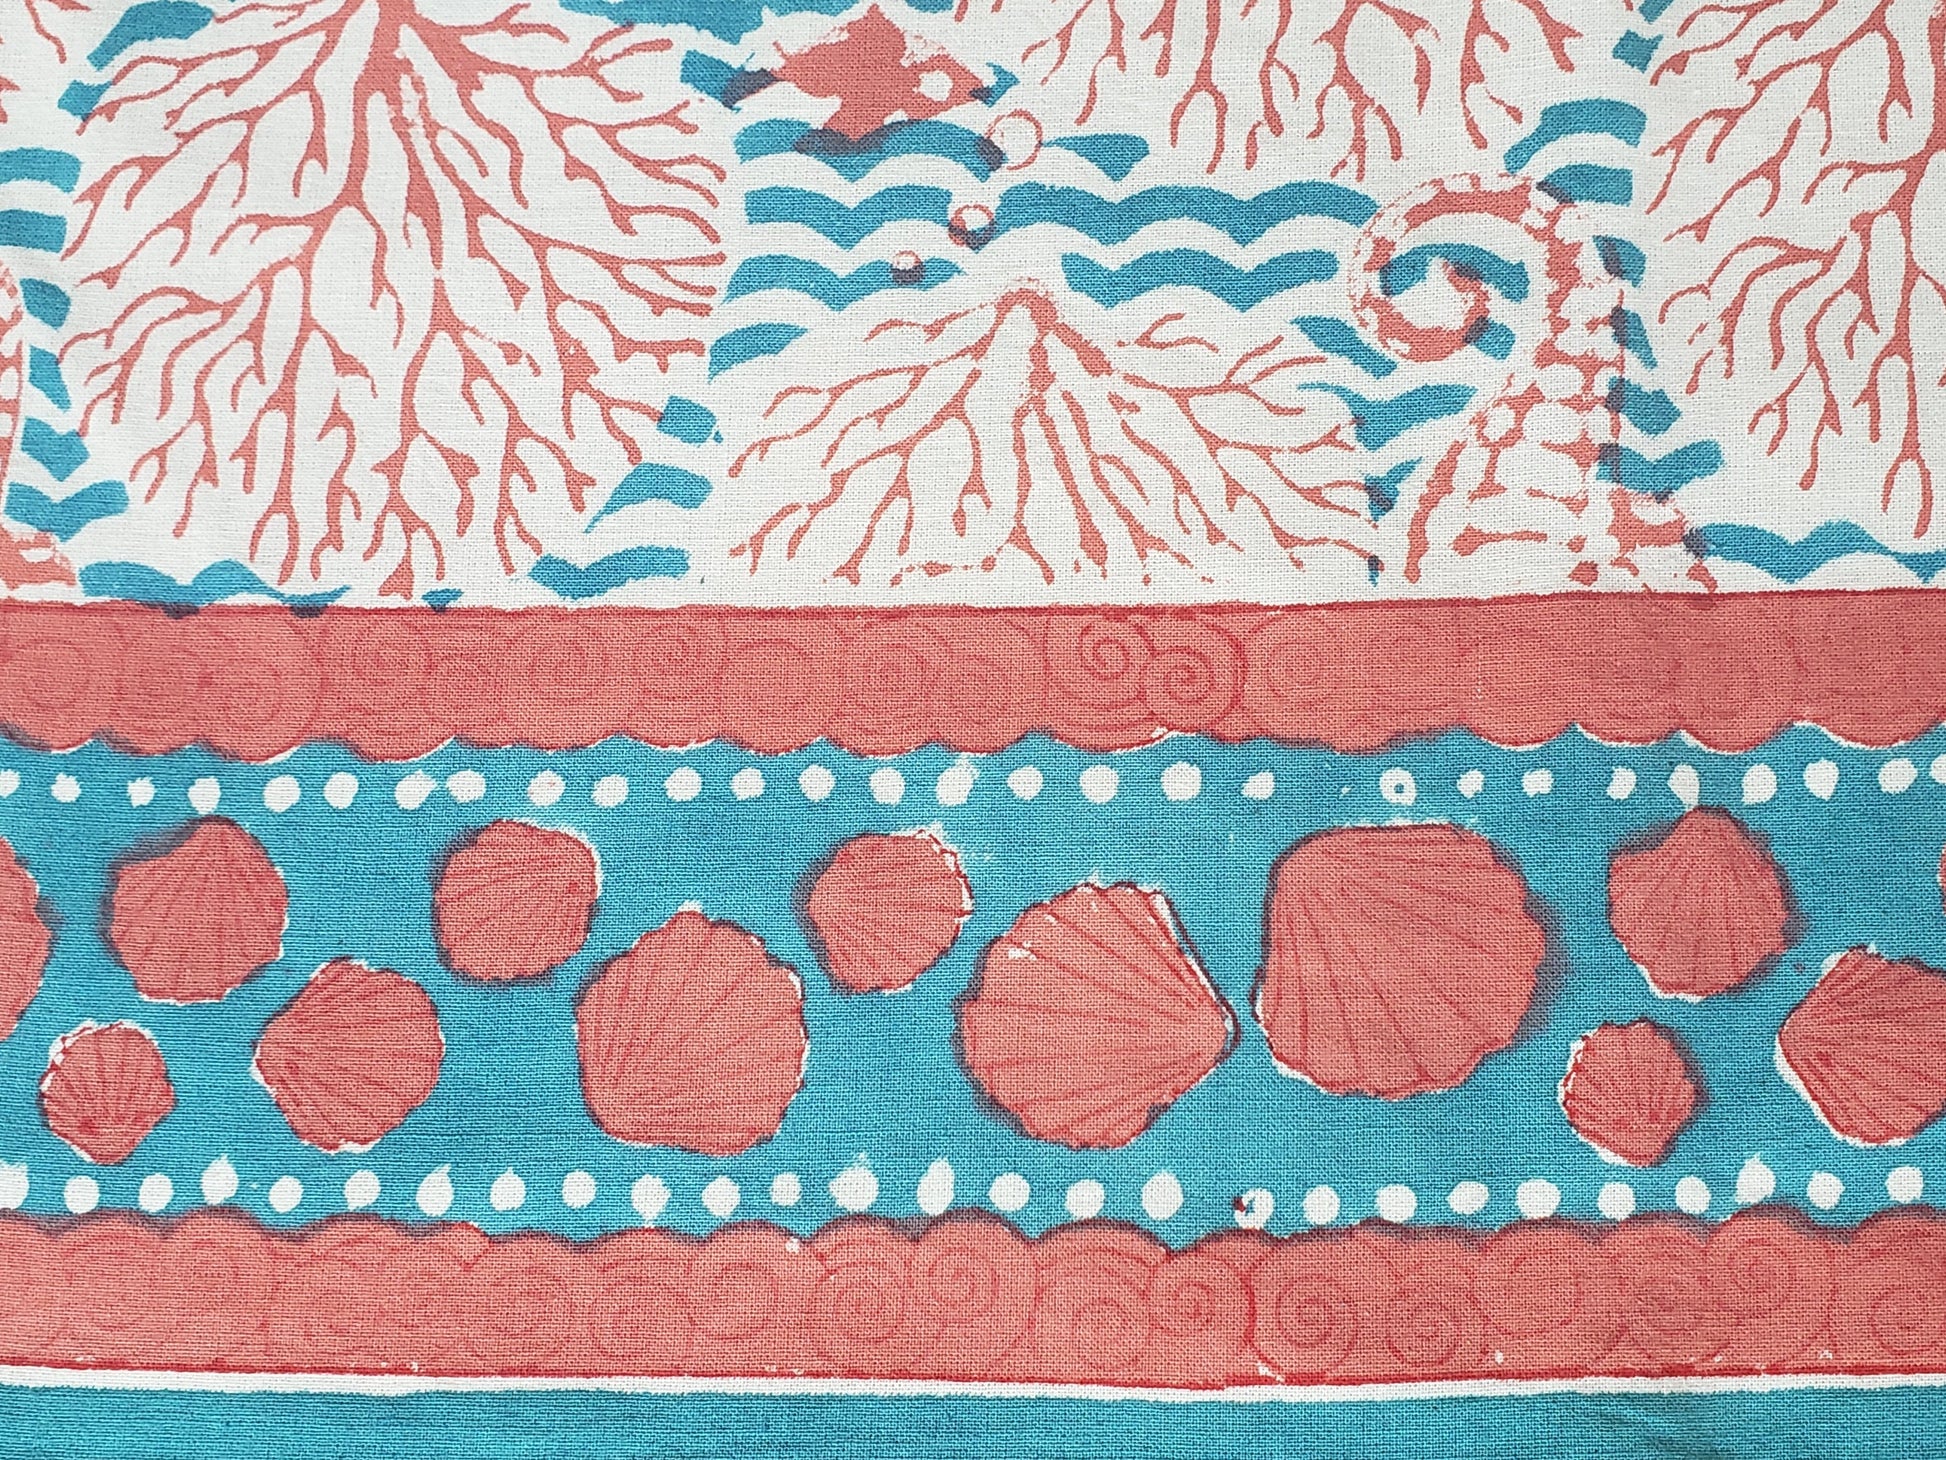 Diseño de borde de sobrecama 100% algodón estampado a mano, diseño de ondas color turquesa con corales y conchas de mar en color coral. Hecho en la India.